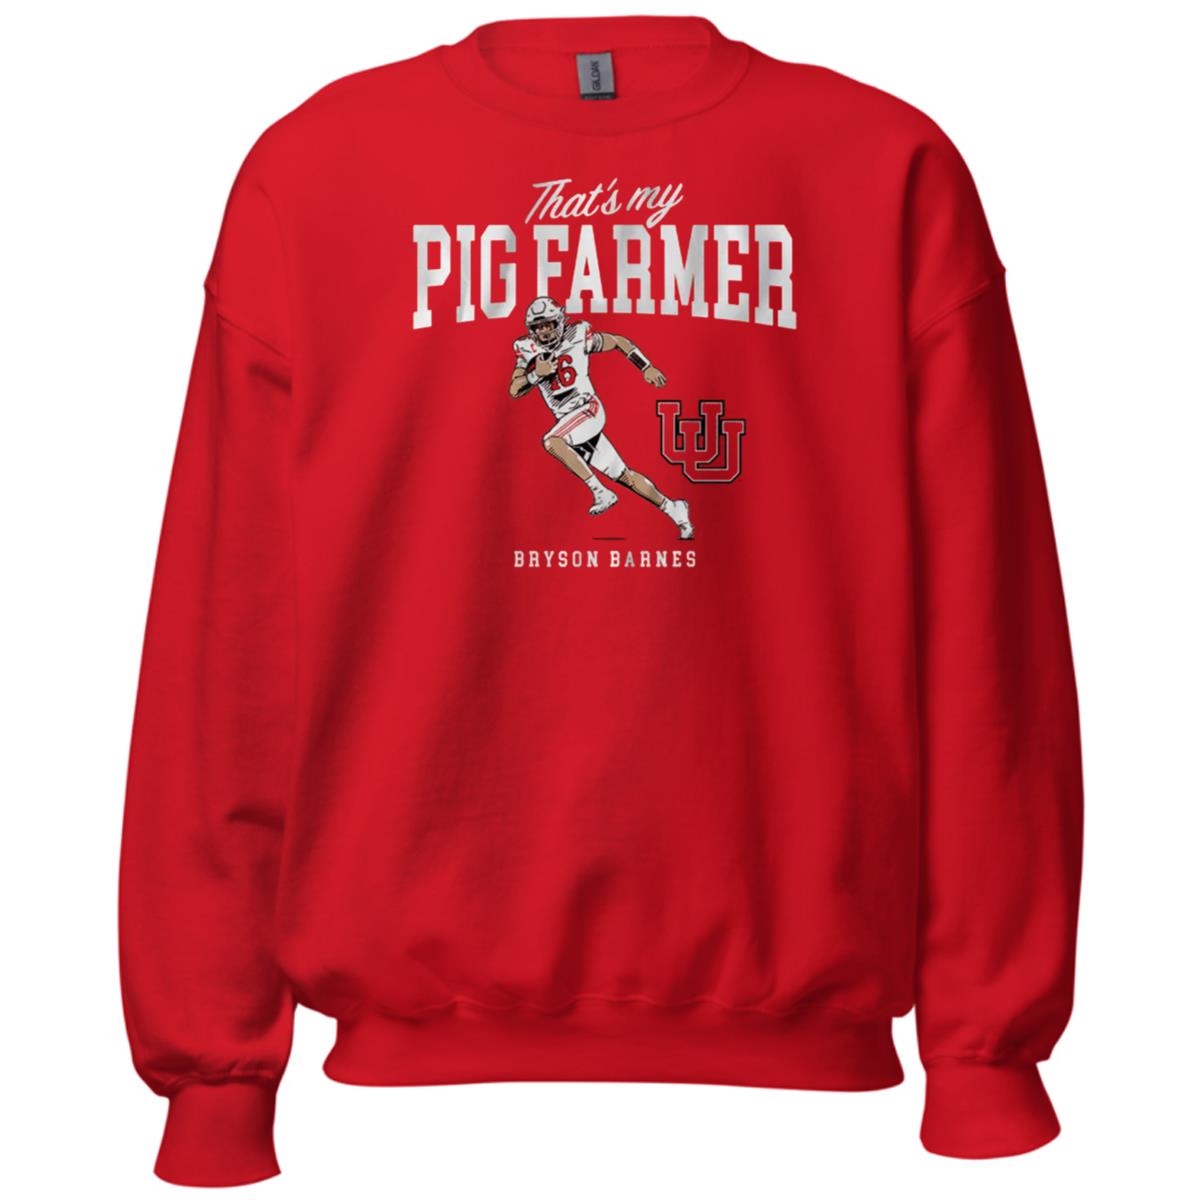 Bryson Barnes That’s My Pig Farmer Sweatshirt